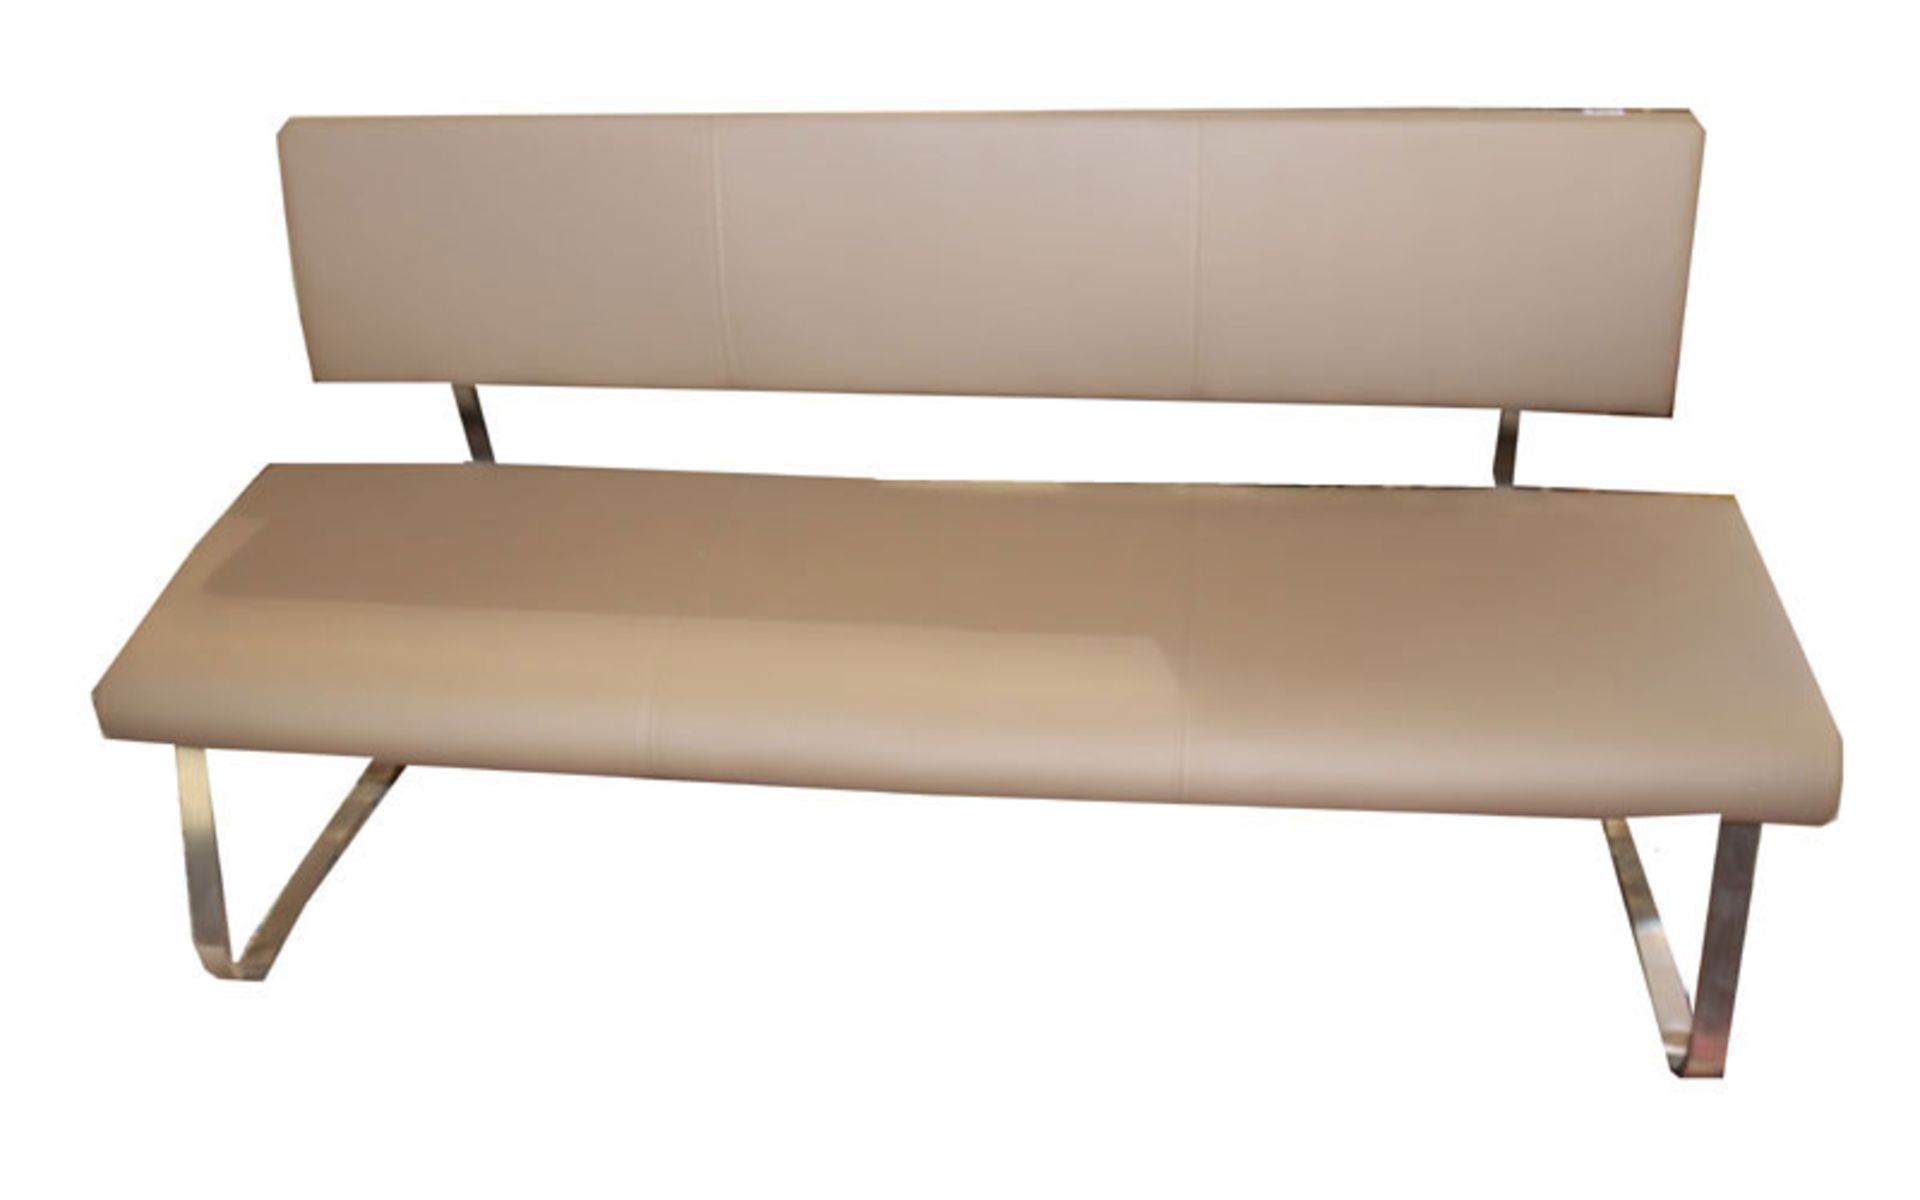 Sitzbank, Metallgestell mit gepolstertem Sitz und Lehne, braun bezogen, H 90 cm, B 175 cm, T 46